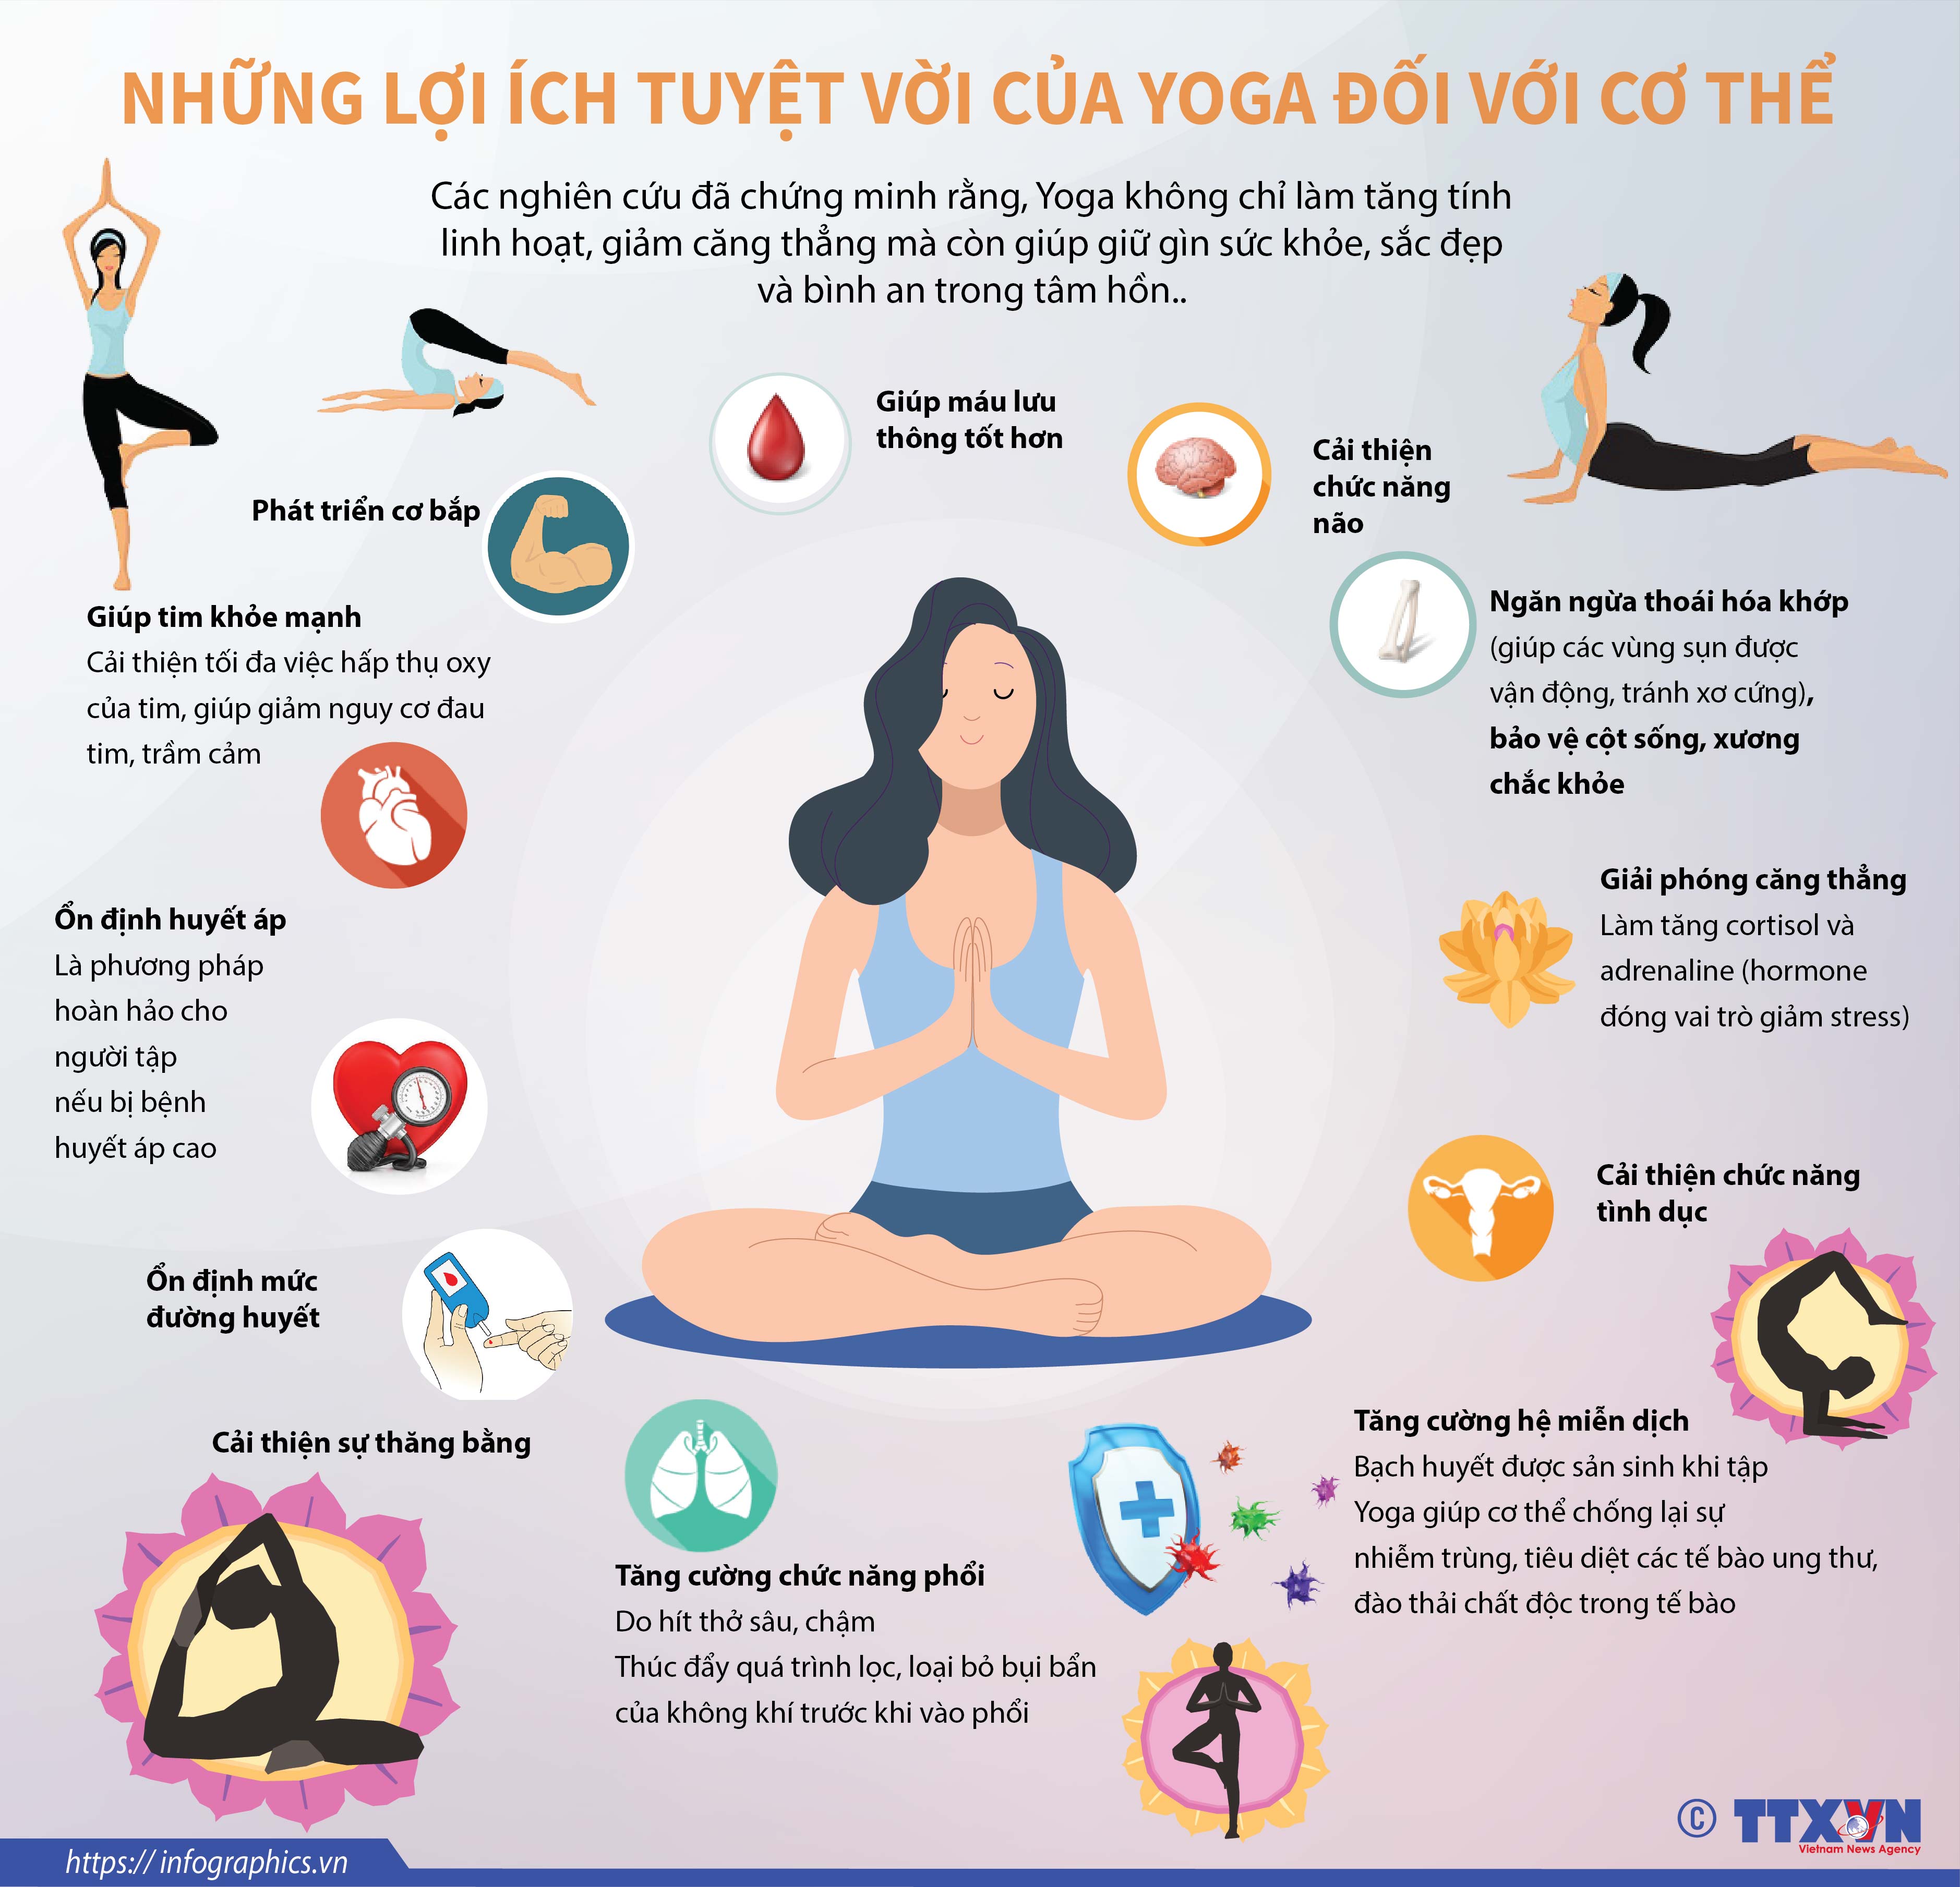 Những lợi ích tuyệt vời của Yoga đối với cơ thể